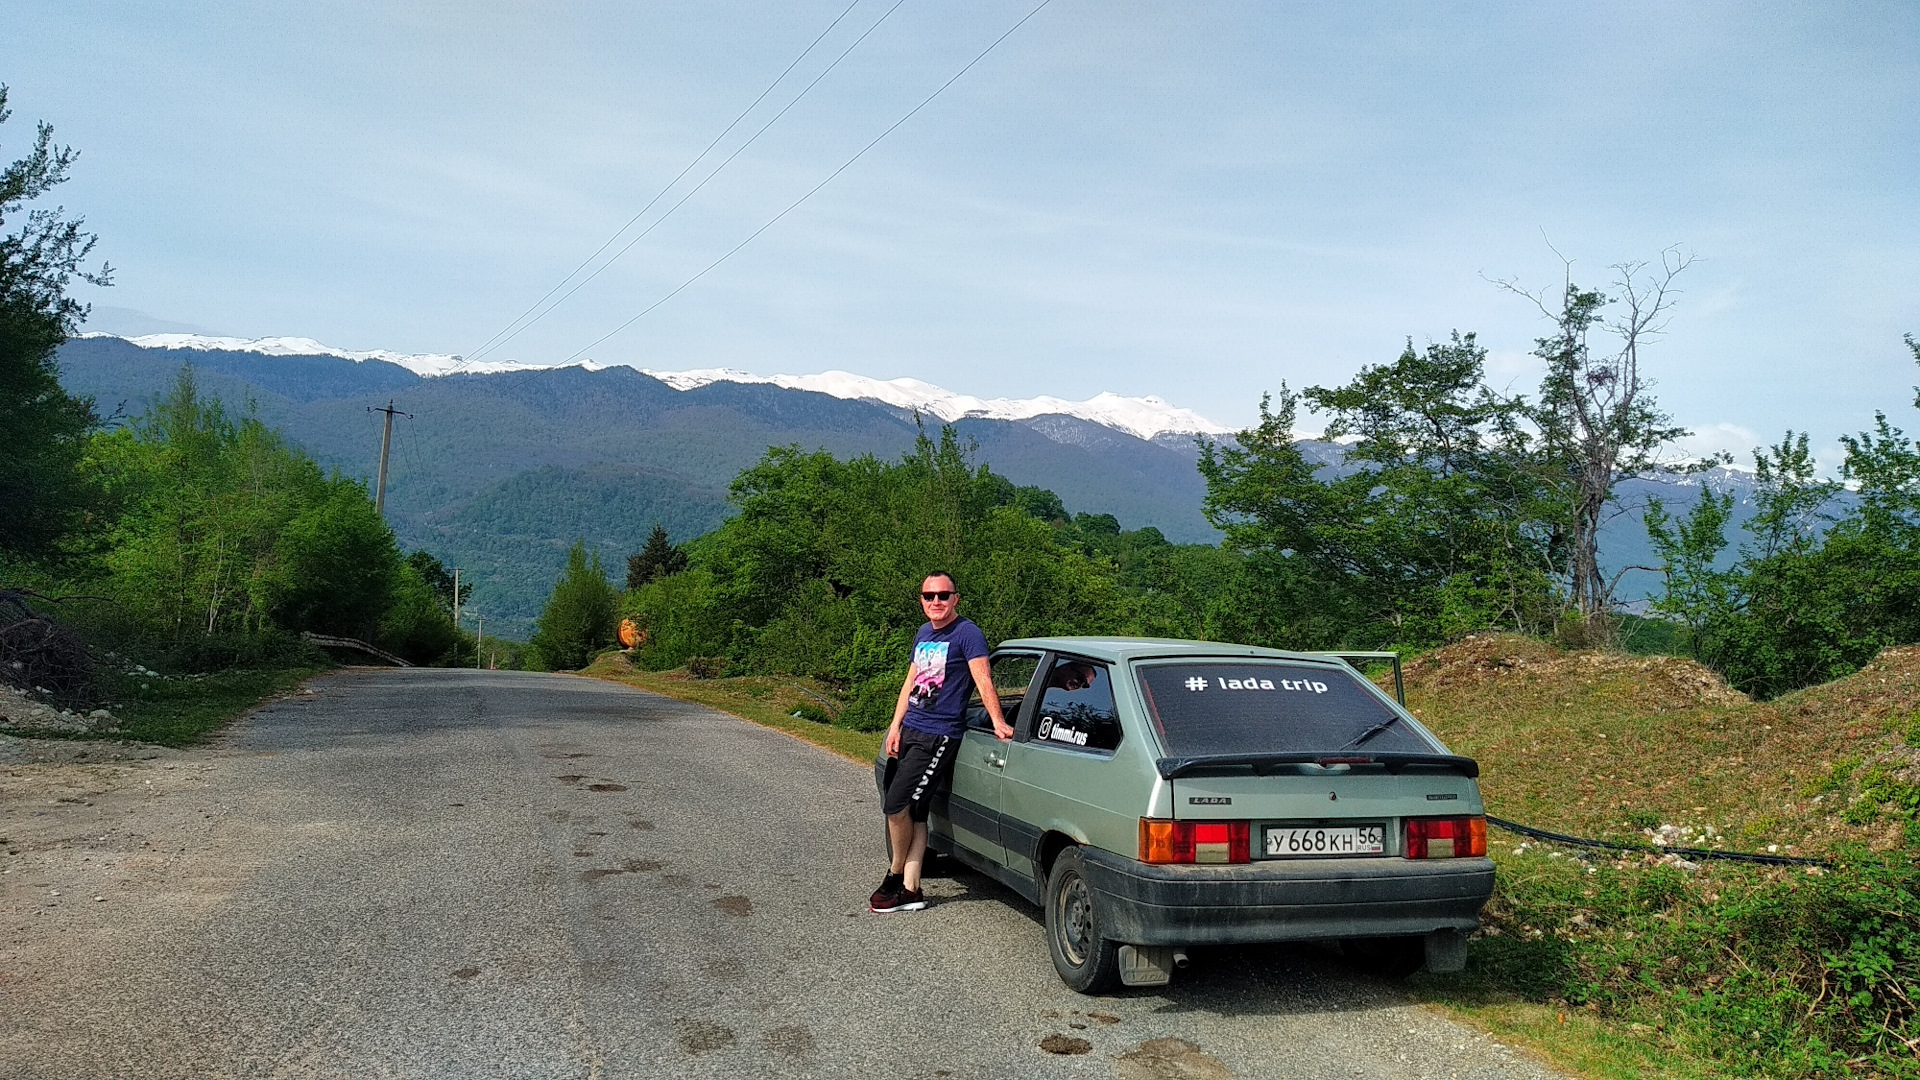 Еду в абхазию на машине. Дорога в Абхазию. Поездка в Абхазию на машине. Путешествие Абхазия на авто. Поездки из России в Абхазию.